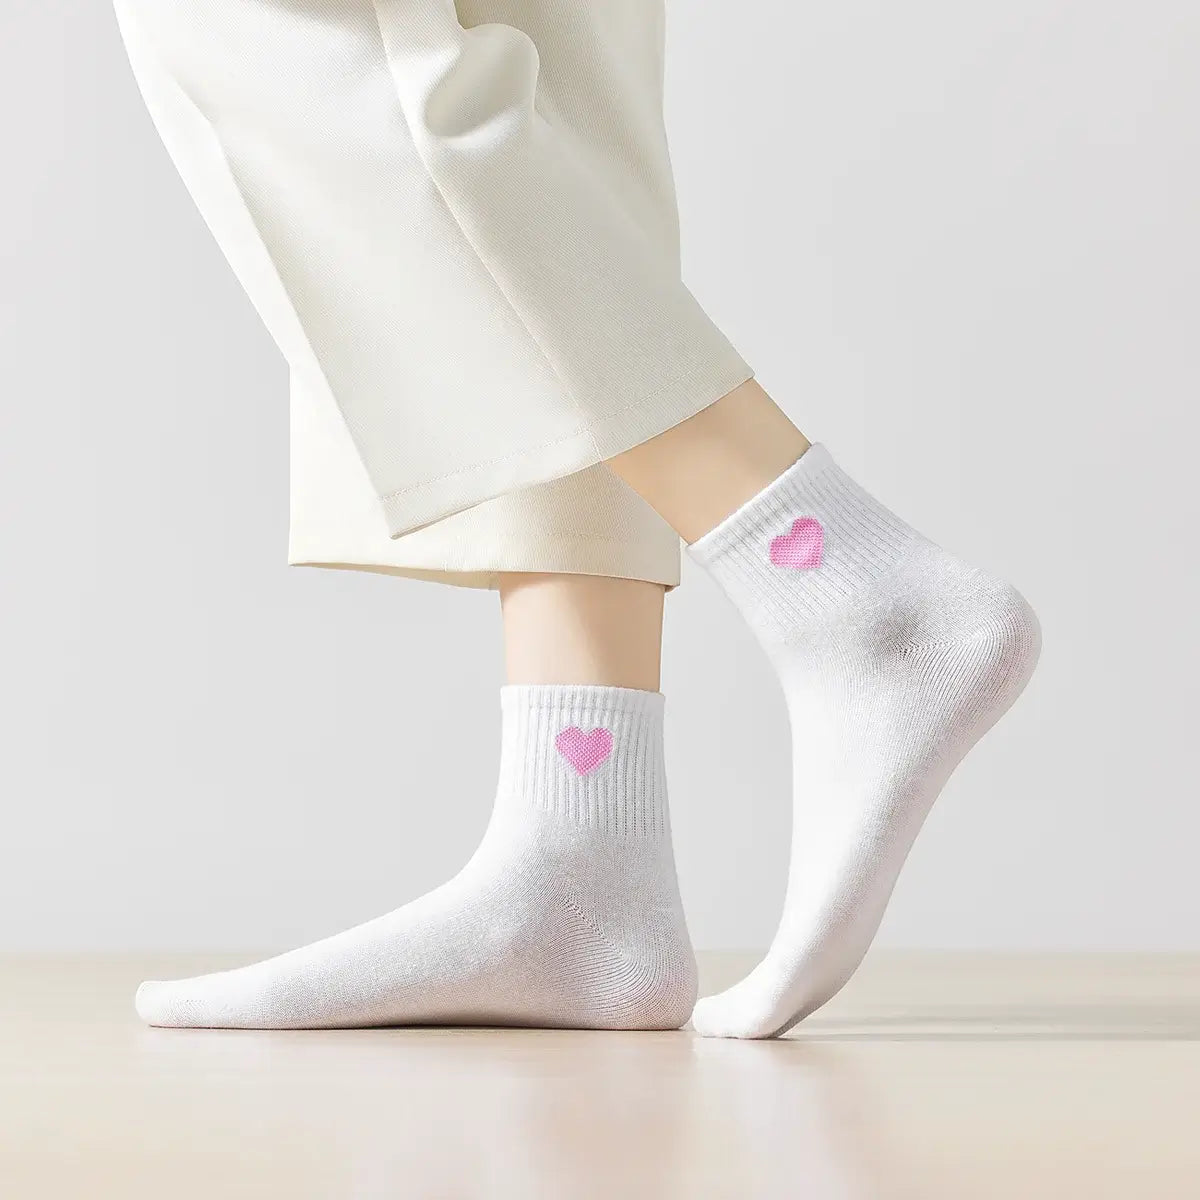 Chaussettes longues beiges adultes en coton avec un cœur rose sur le côté | Chaussettes abordables et de haute qualité | Un excellent choix pour les adultes qui aiment les cœurs |